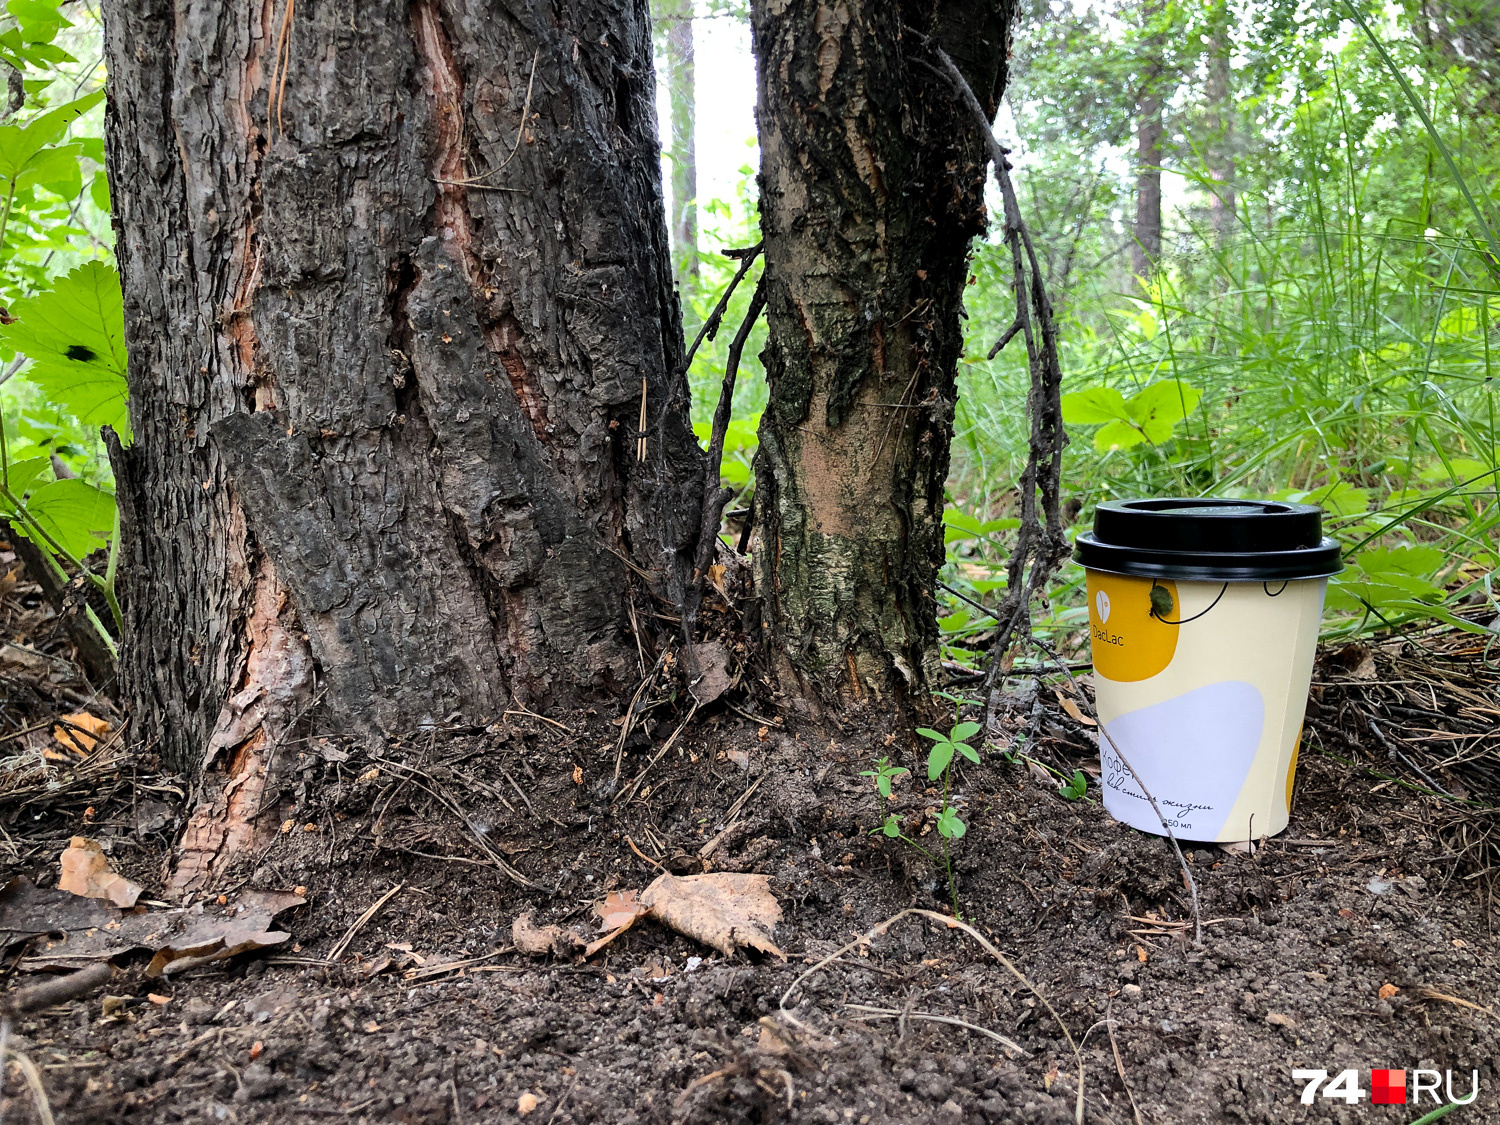 Брюзжать буду. Каким остолопом надо быть, чтобы притащить в лес кофе и оставить стаканчик?